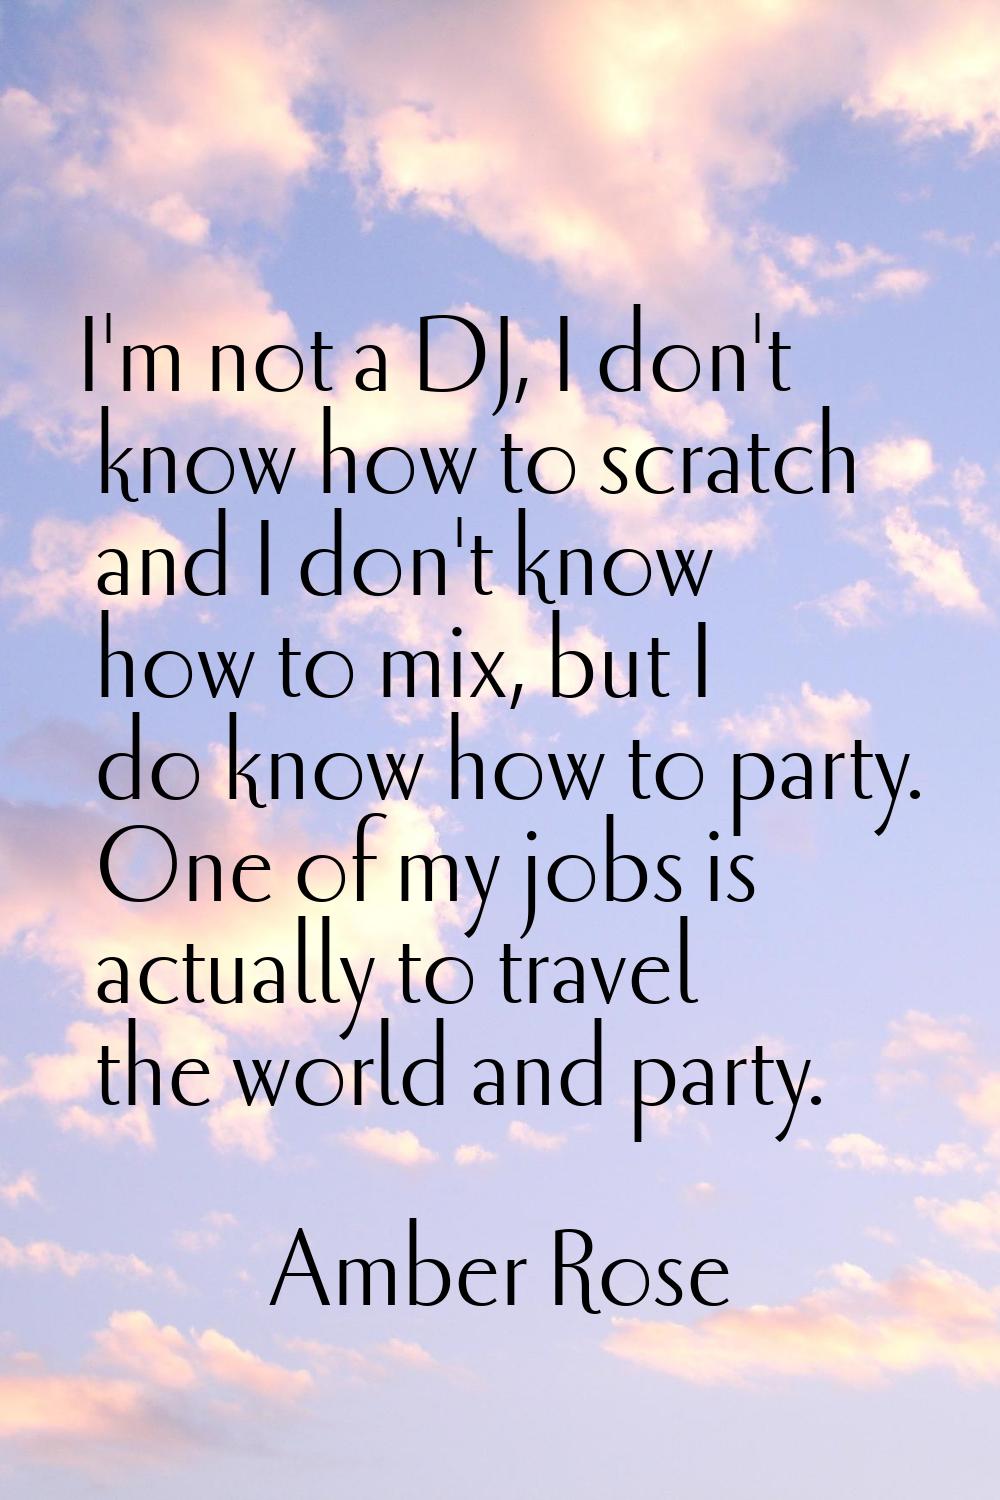 I'm not a DJ, I don't know how to scratch and I don't know how to mix, but I do know how to party. 